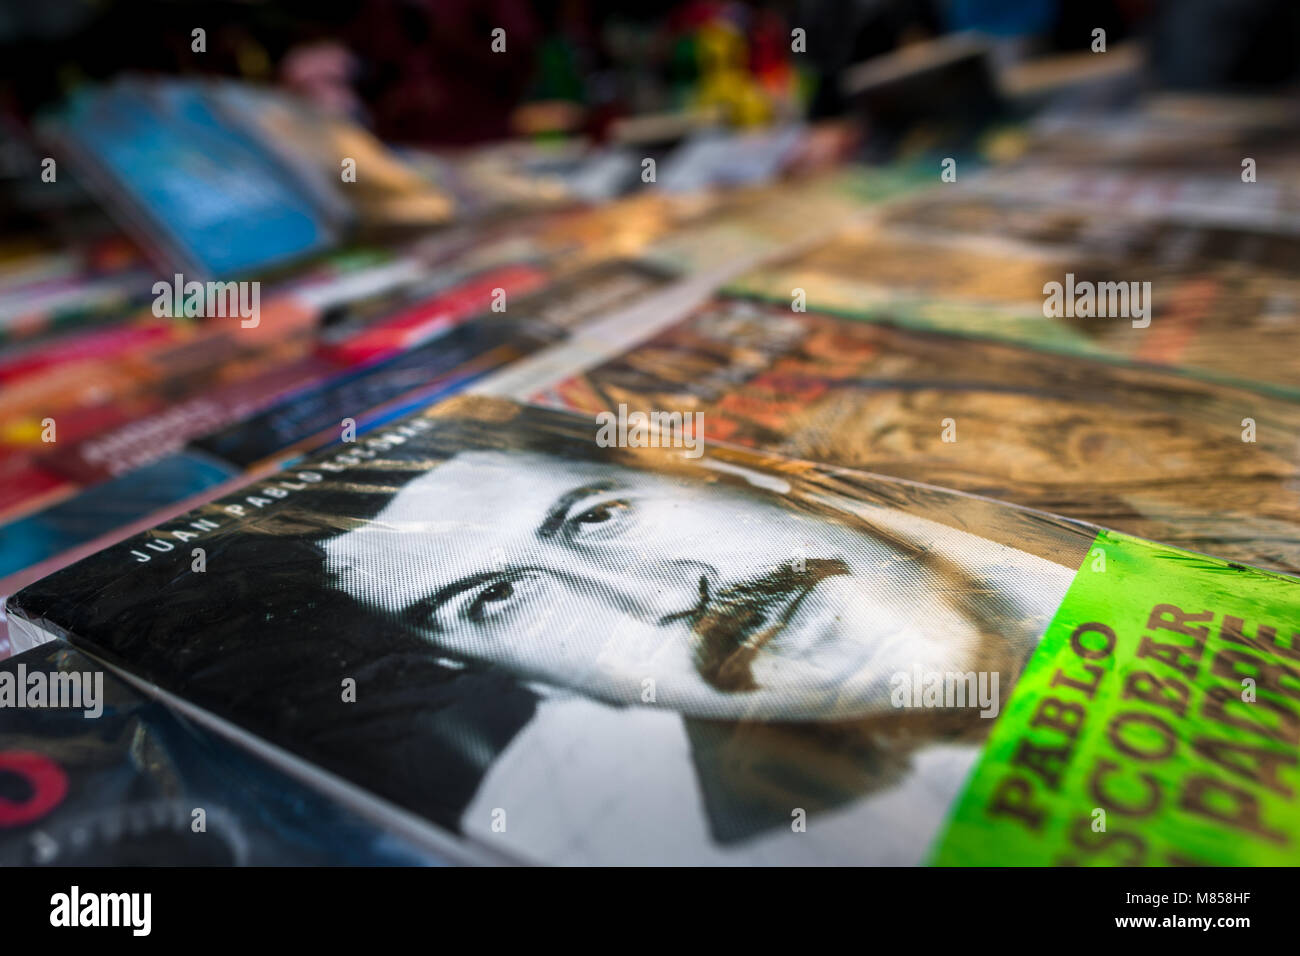 Los libros en rústica, mostrando el narcotraficante Pablo Escobar en sus  portadas, son vistos dispuestos en el stand de mercado en la calle en  Medellín, Colombia Fotografía de stock - Alamy